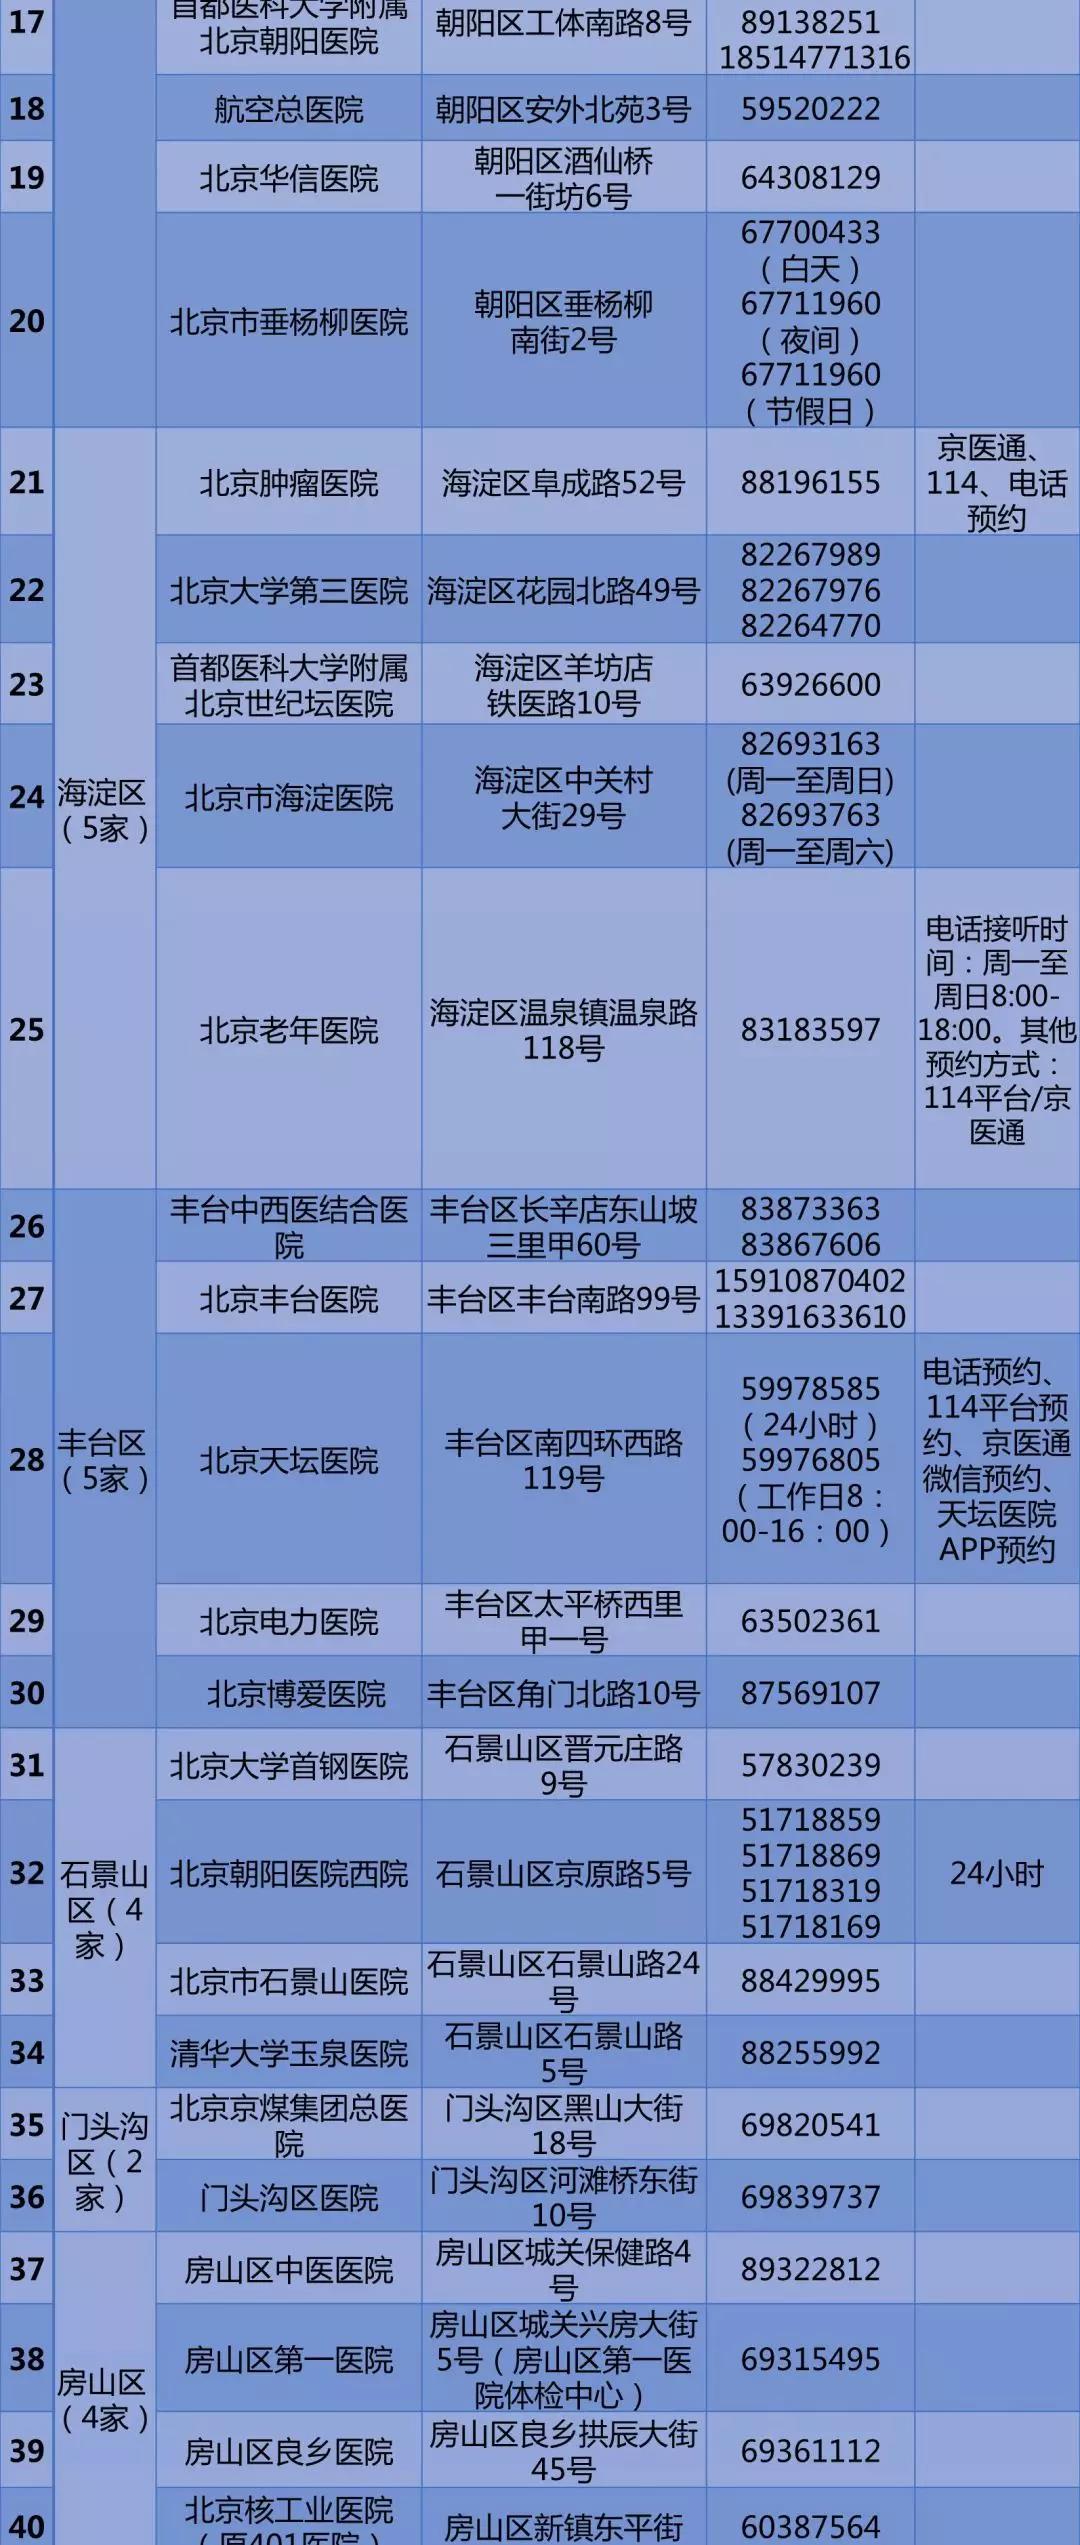 北京公布57家公立医疗机构核酸检测预约电话